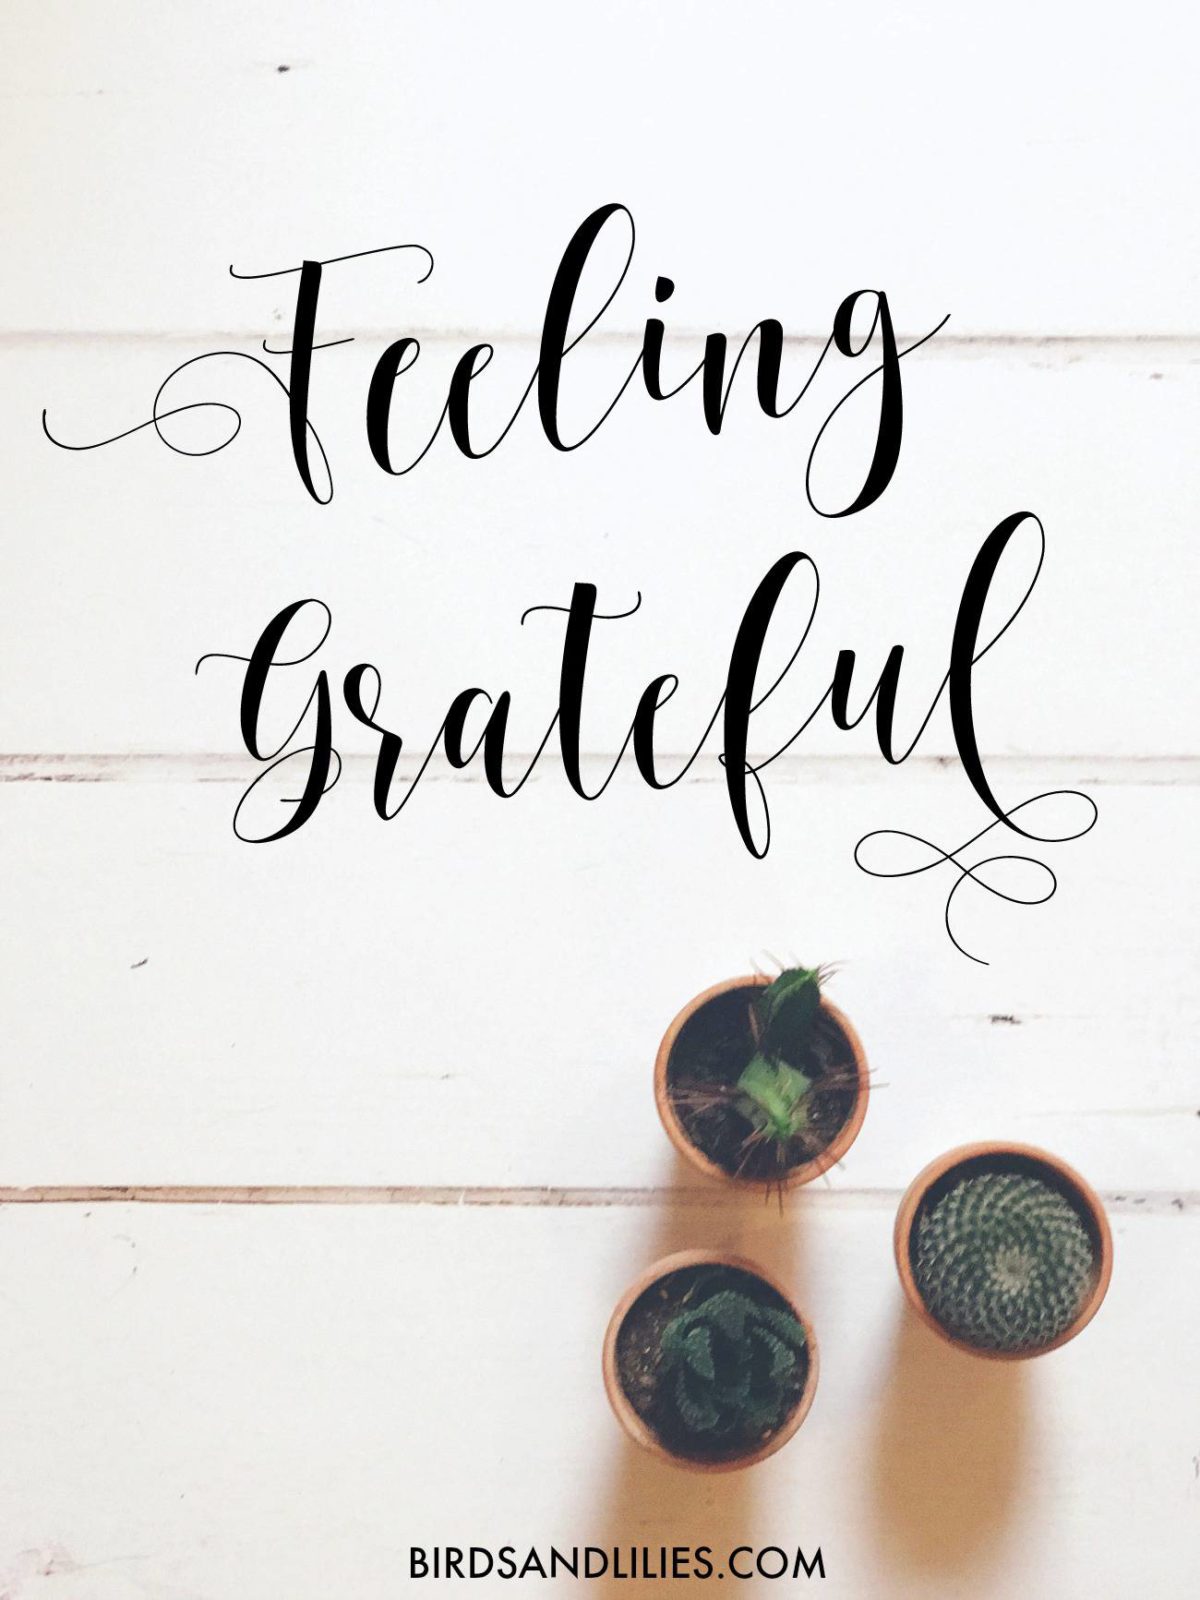 7 Things I'm Feeling Grateful For